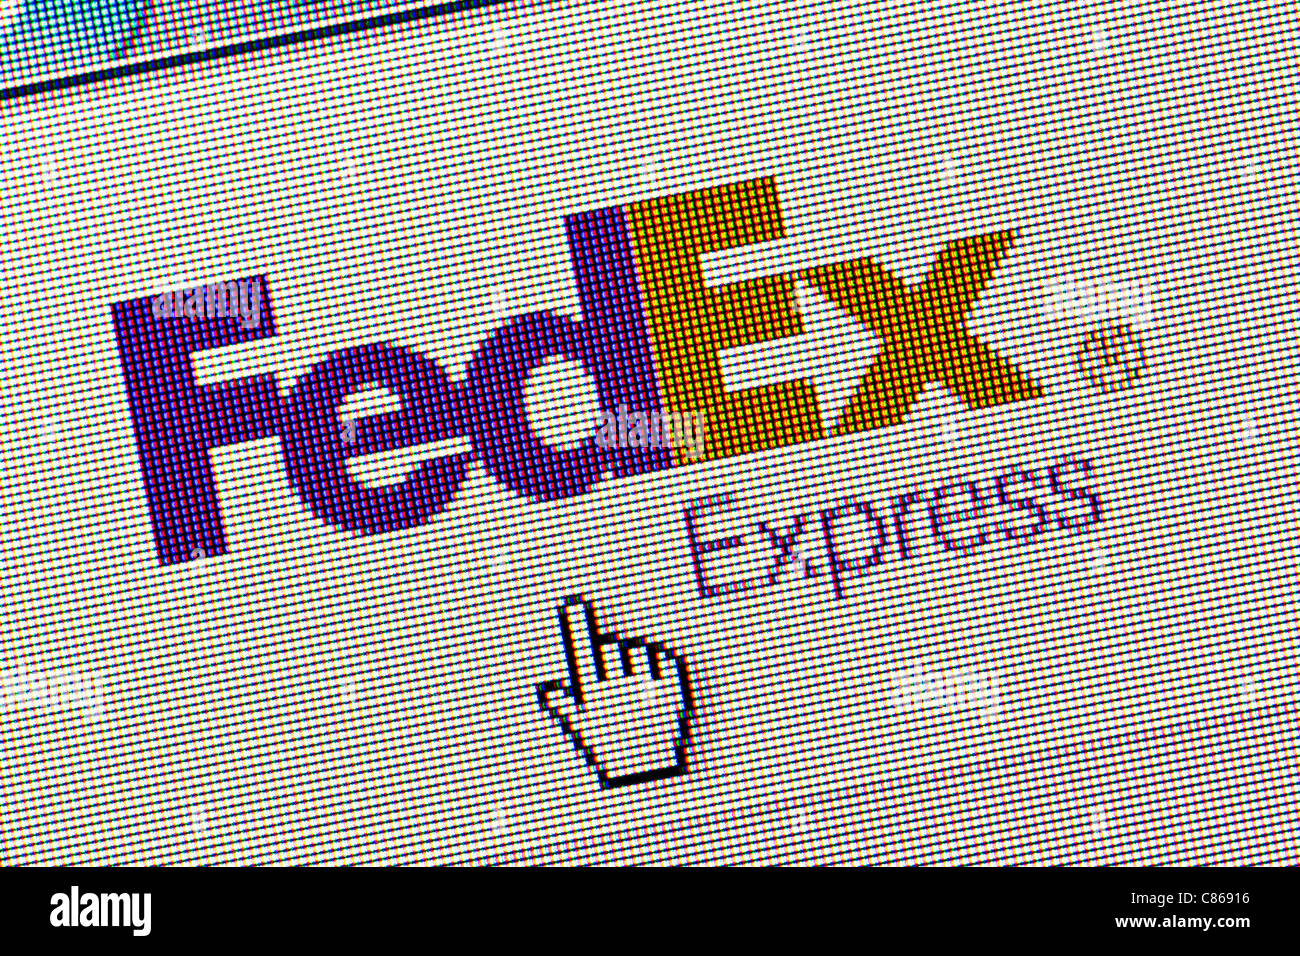 Le logo et le site web de FedEx close up Banque D'Images